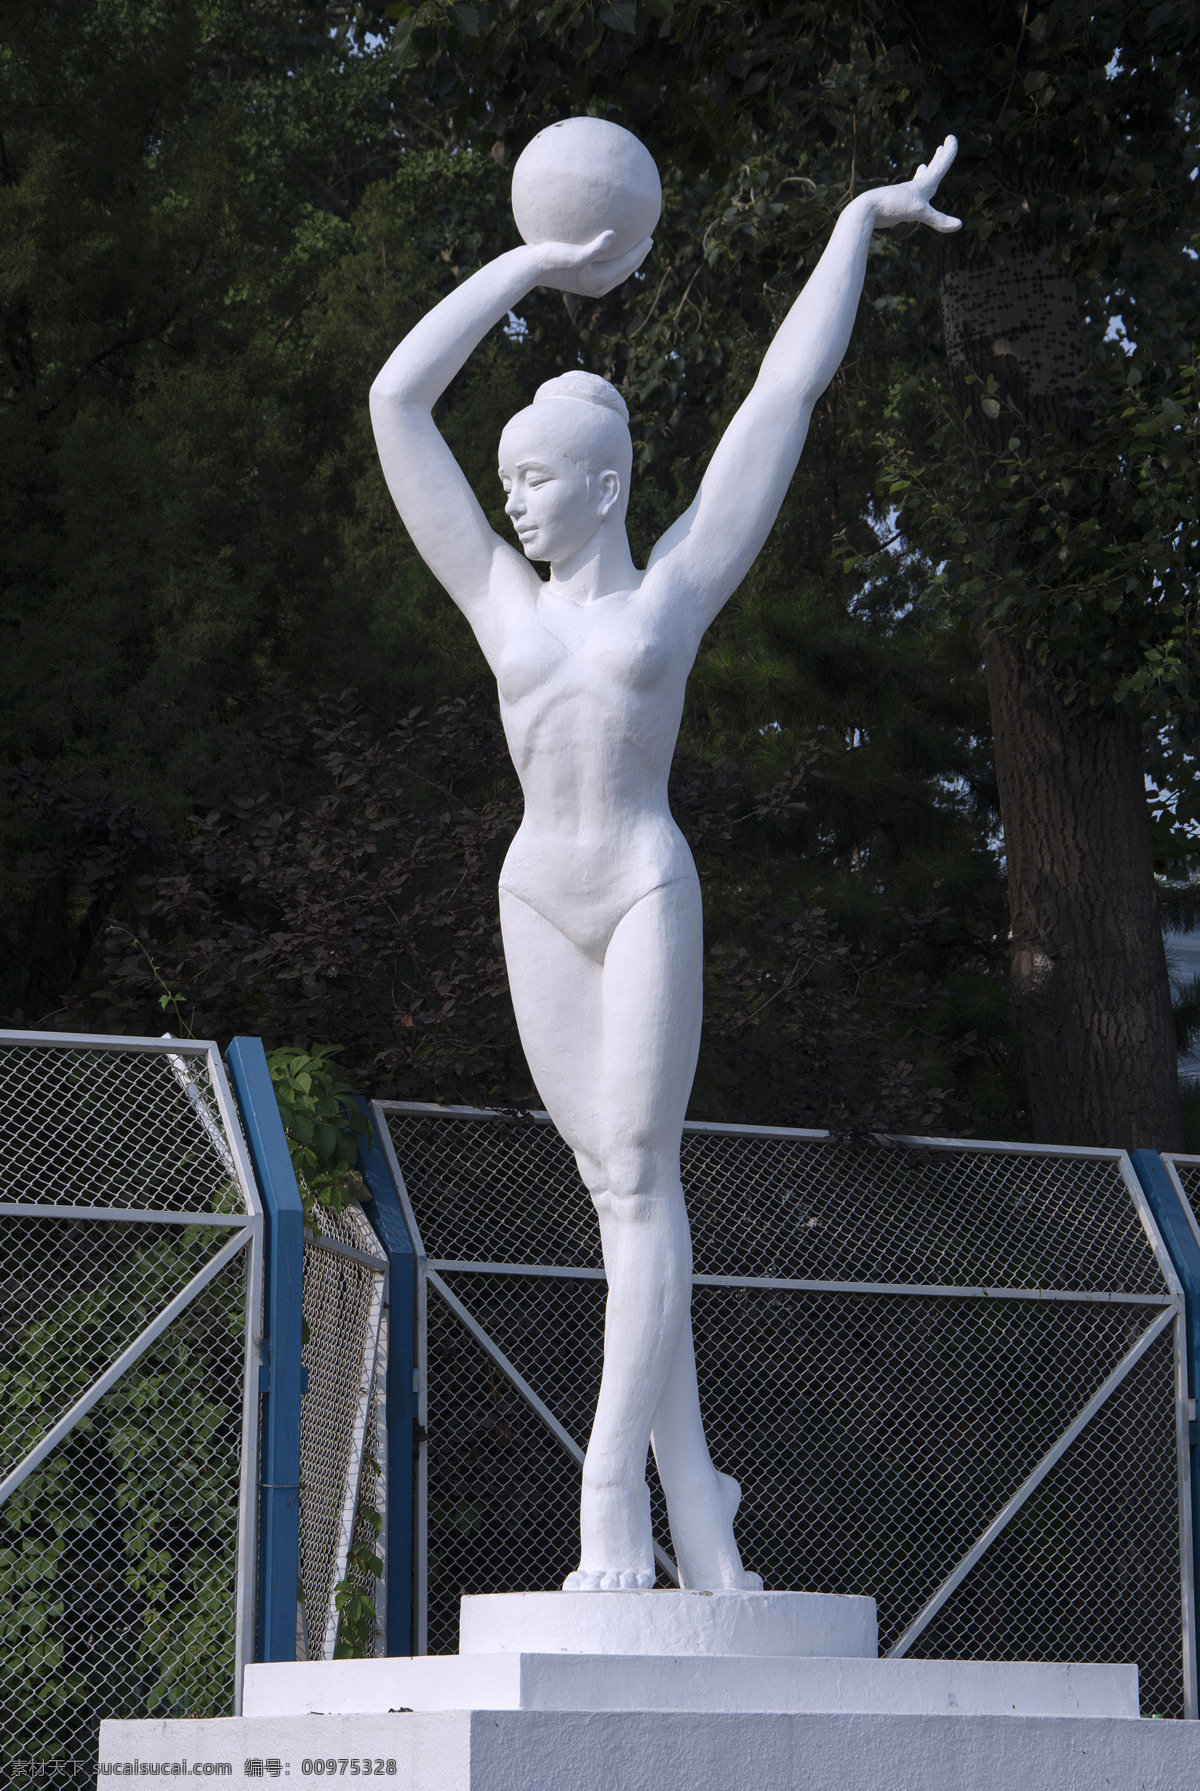 城市雕塑 体操 艺术体操 球操 工体雕塑 运动健儿 运动员 体育雕塑 健美 运动员雕塑 运动美 人体美 人物雕塑 雕塑艺术 现代雕塑 建筑园林 雕塑